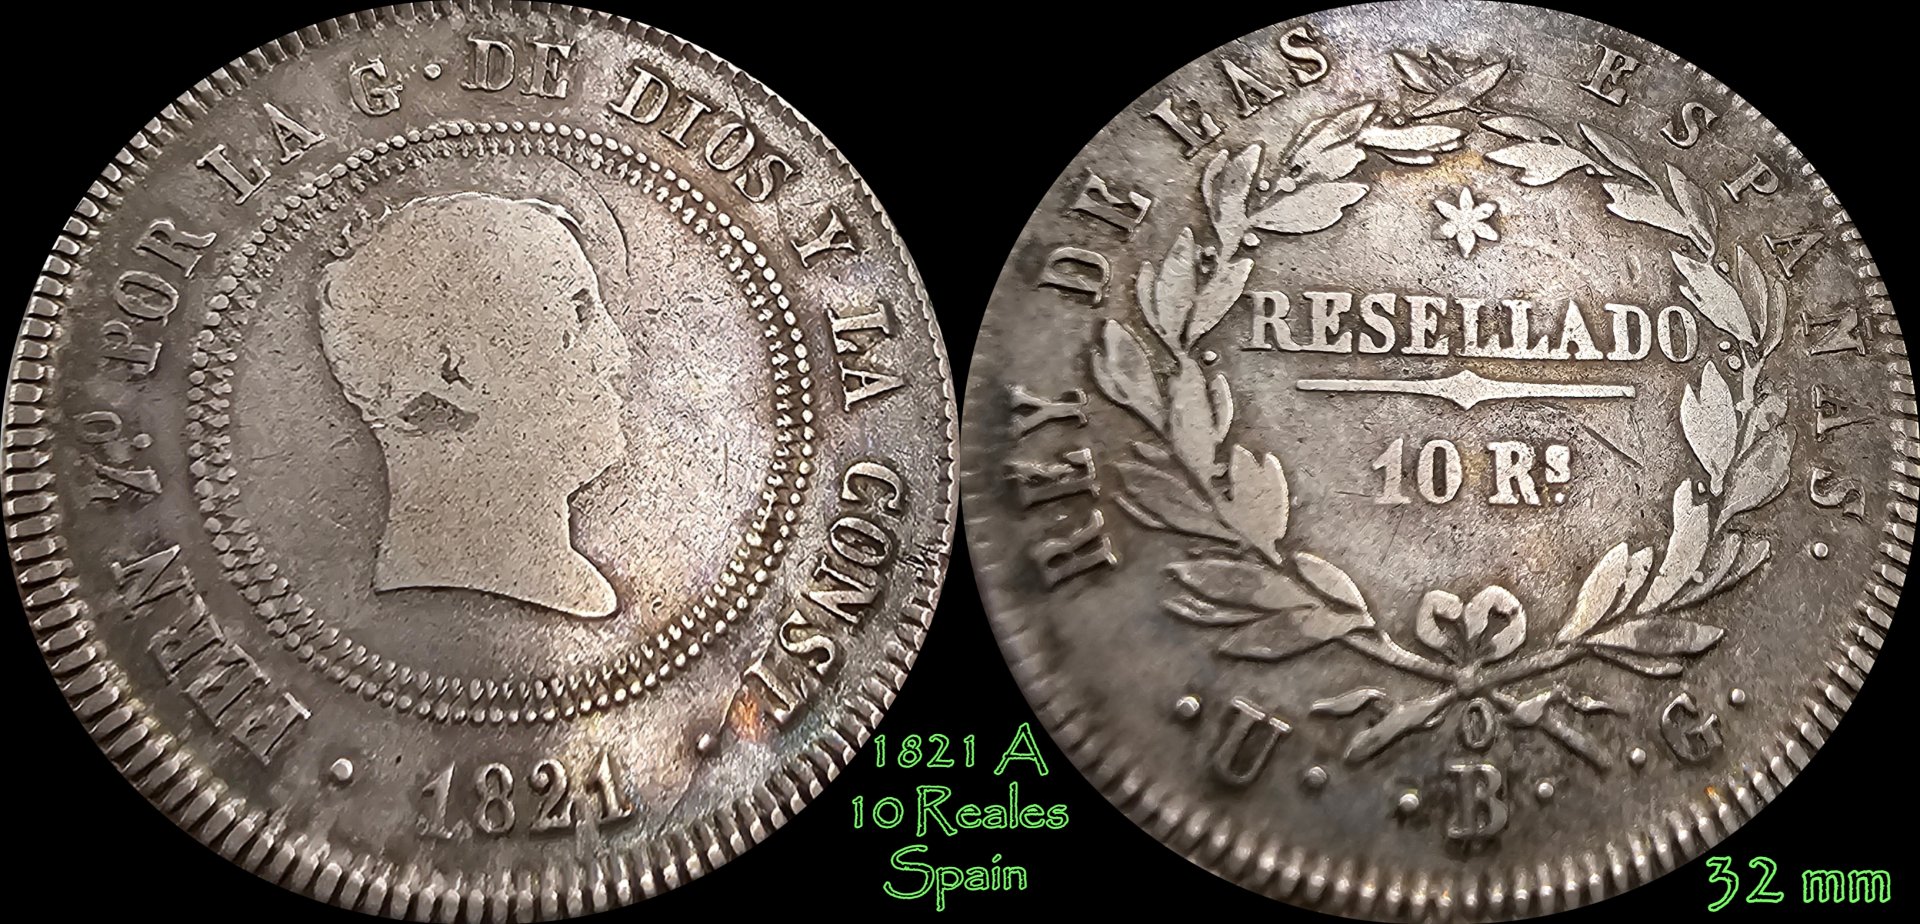 1821 10 Reales.jpg